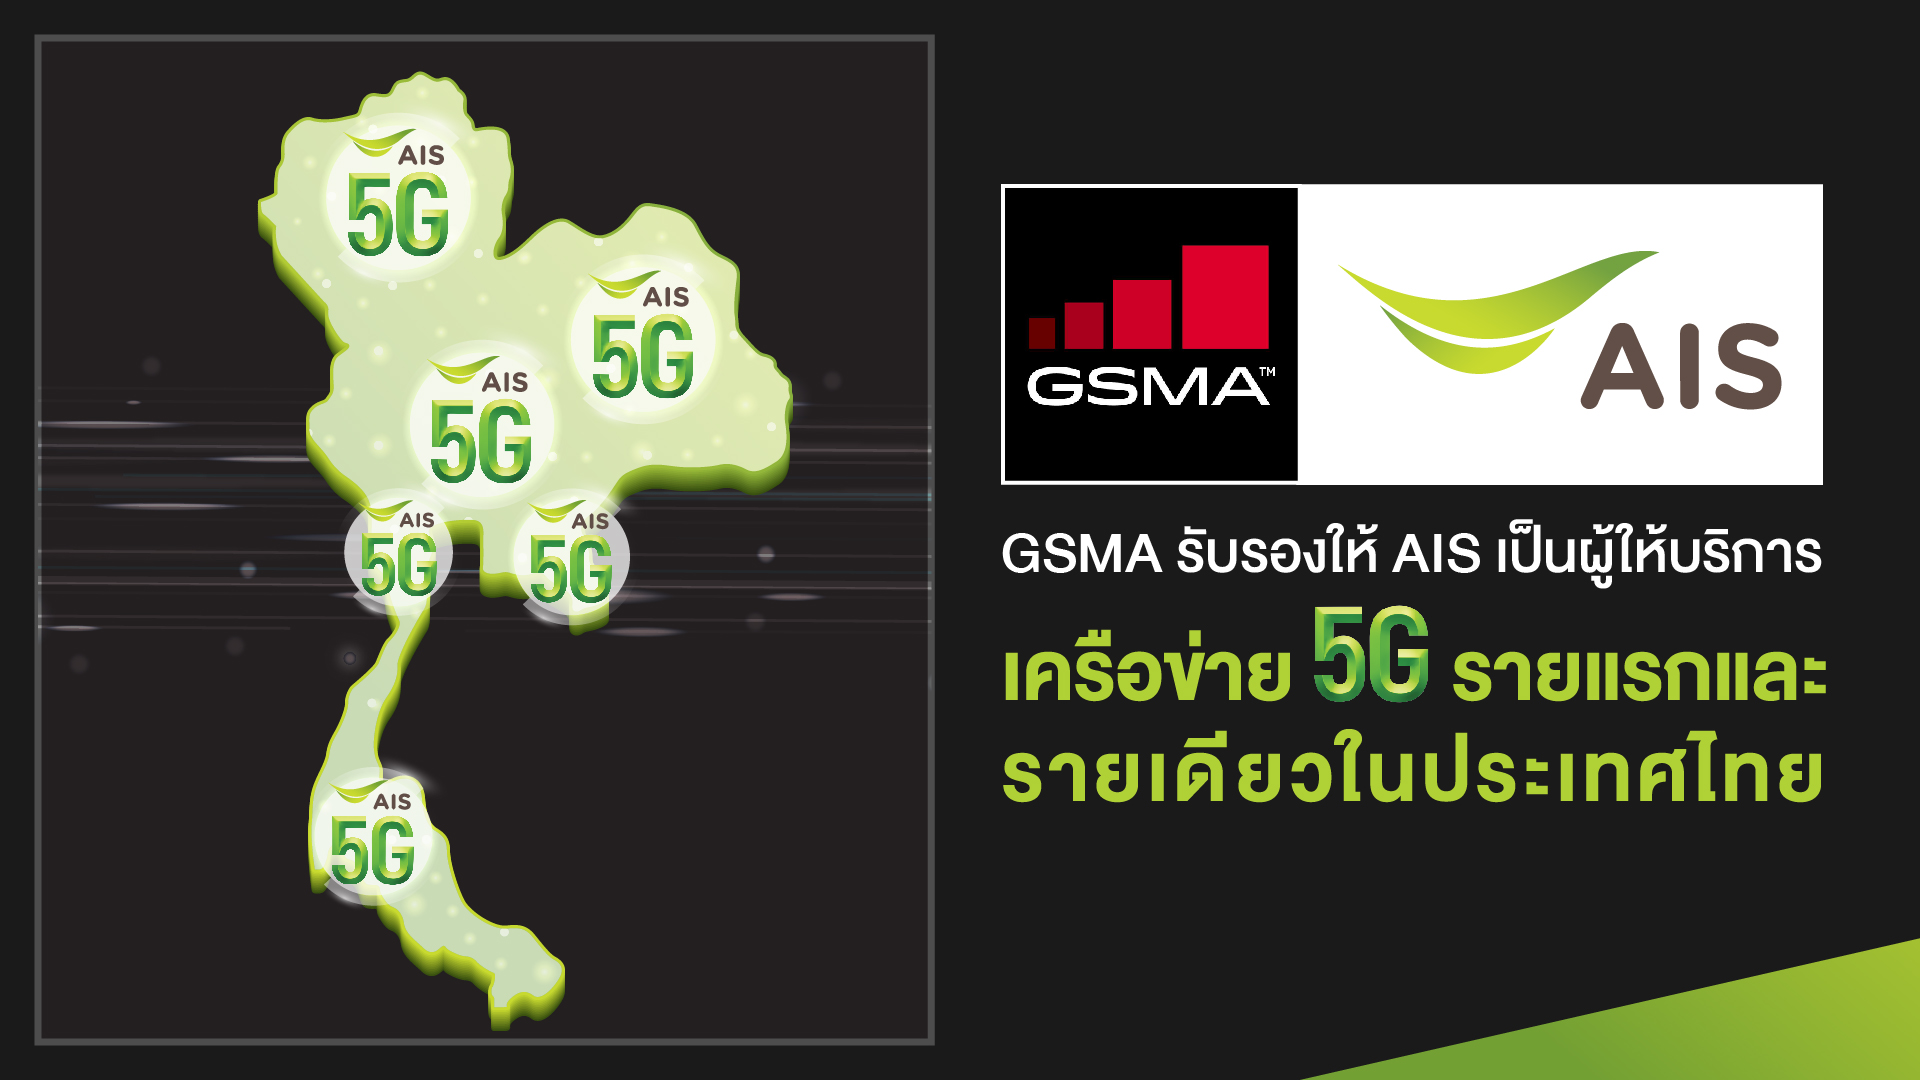 GSMA ประกาศรับรอง AIS เป็นผู้ให้บริการเครือข่าย 5G รายแรกและรายเดียวในประเทศไทย ปักหมุดไทย เป็น ประเทศแรกที่ให้บริการ 5G บนมือถือในเอเชียตะวันออกเฉียงใต้